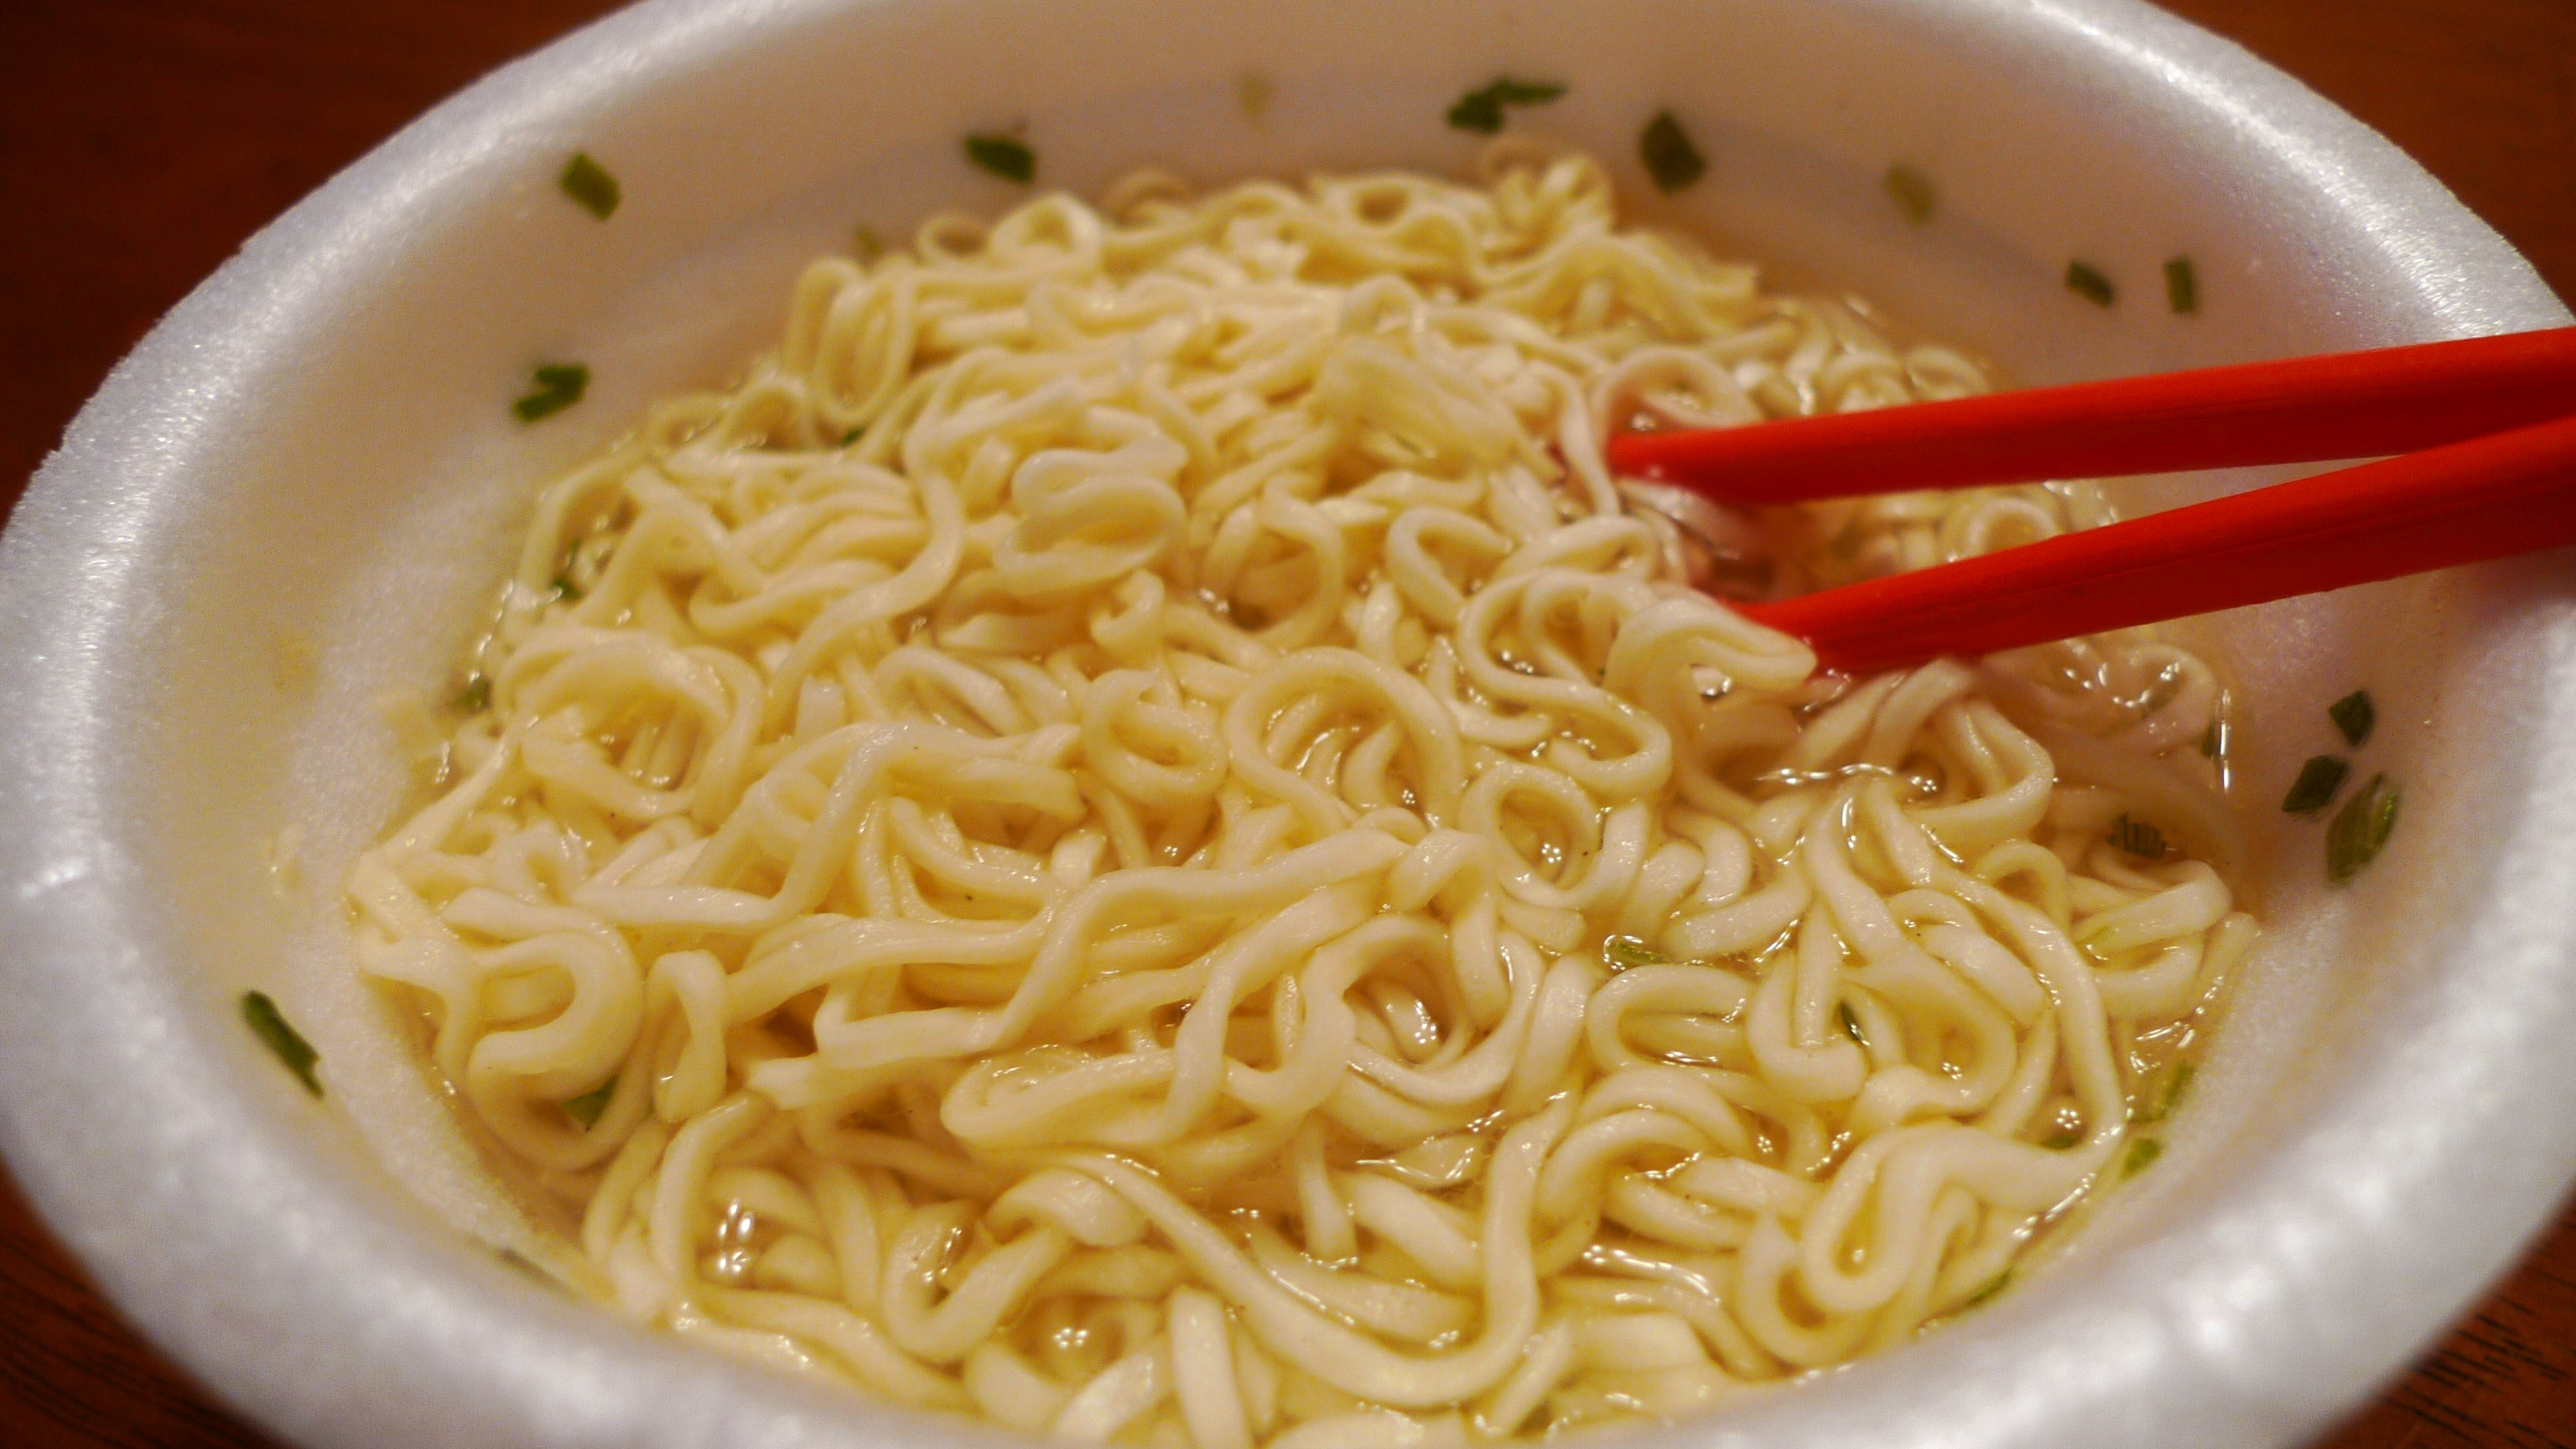 10 Tasty Ramen Hacks to Make Your Bowl of Noodles Even More Slurp-able